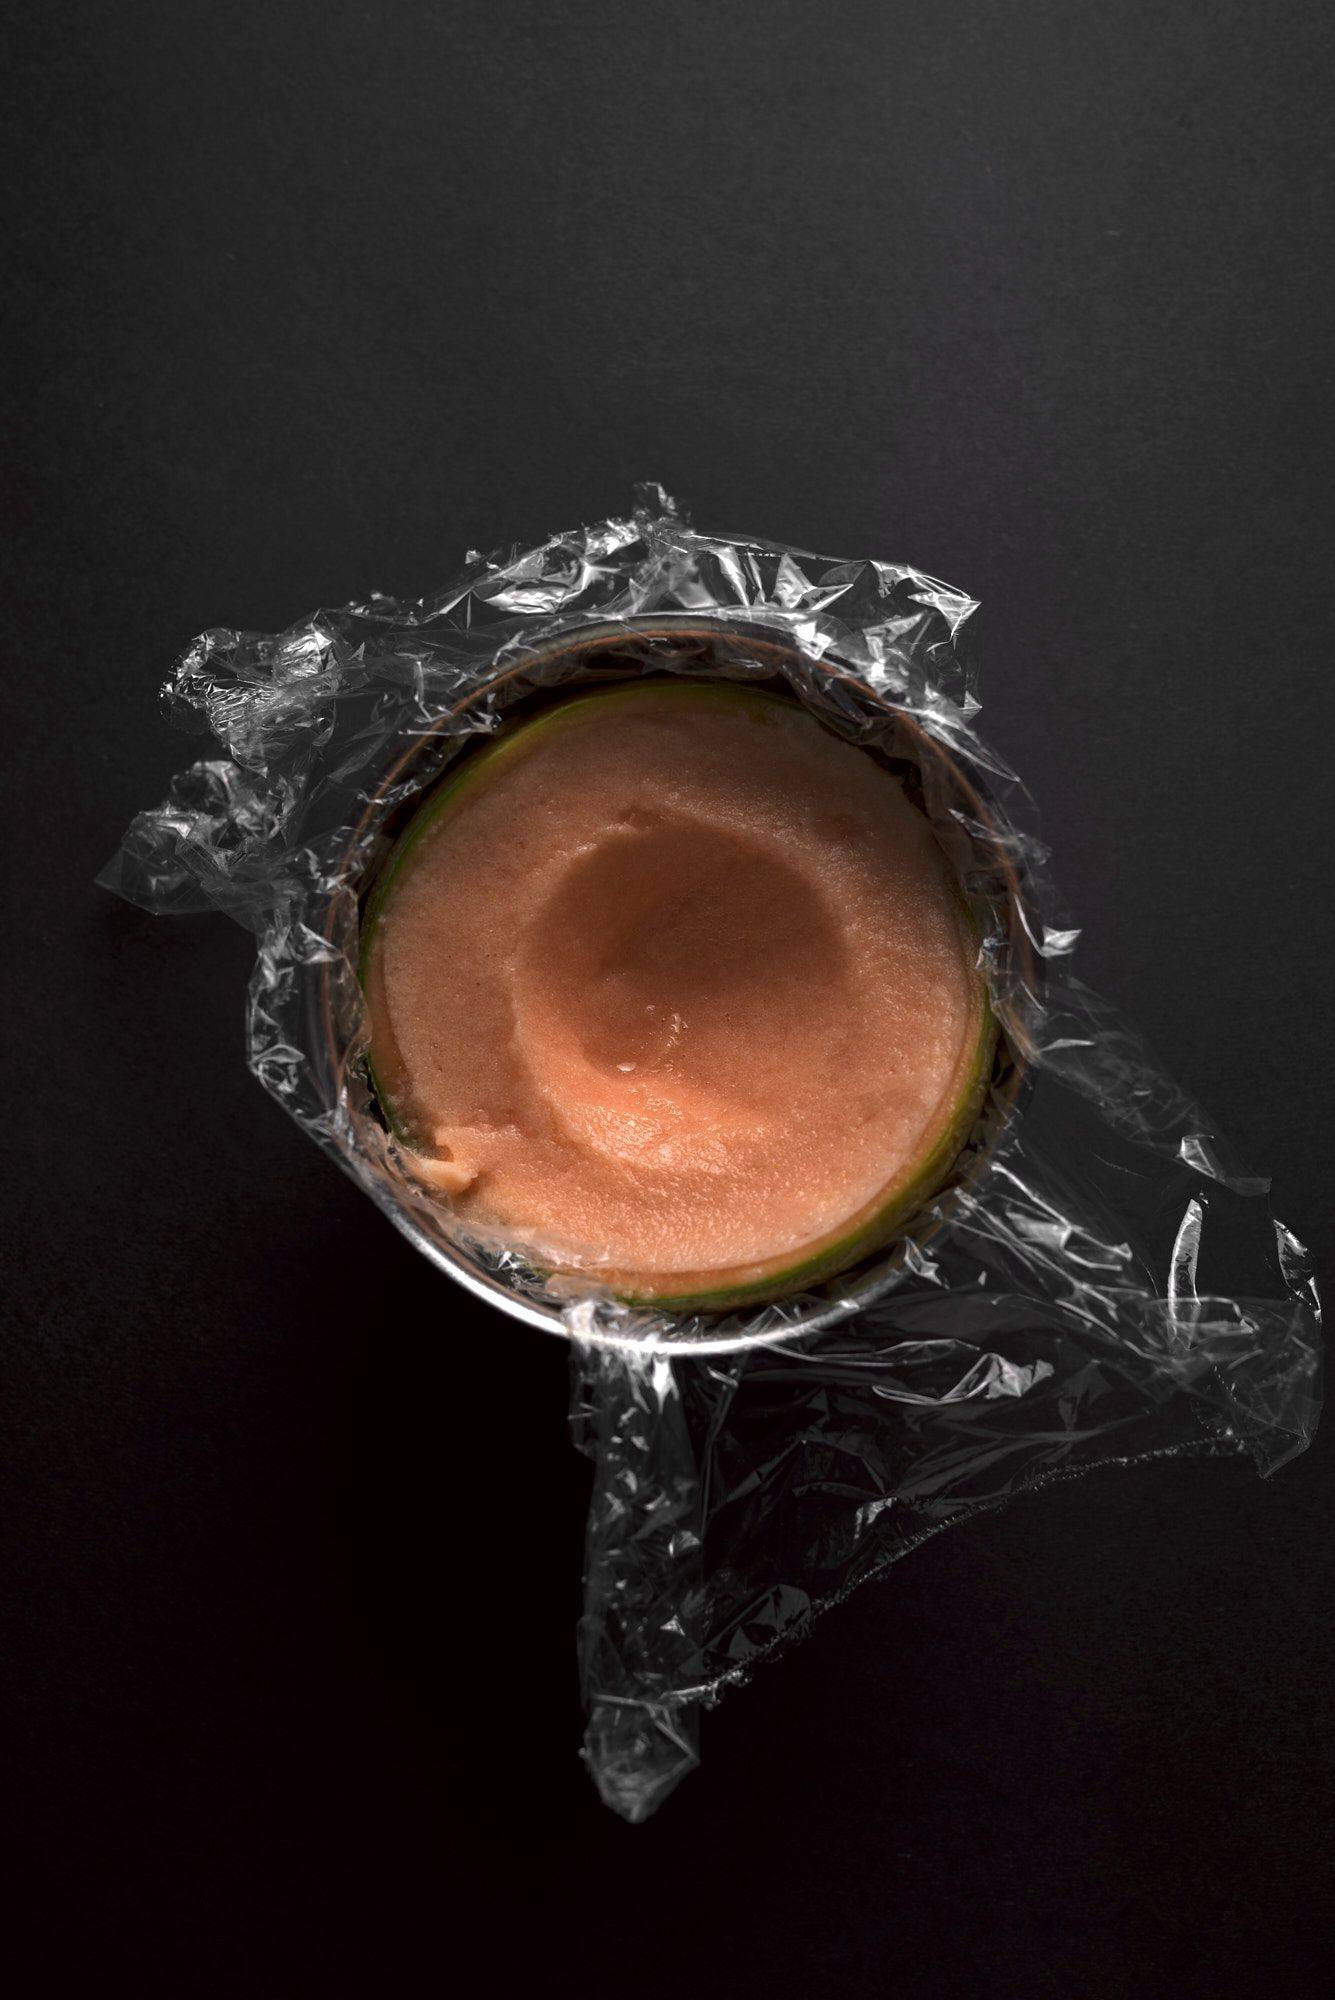 cantaloupe melonen sorbet in einer metallschüssel mit schwarzem hintergrund 